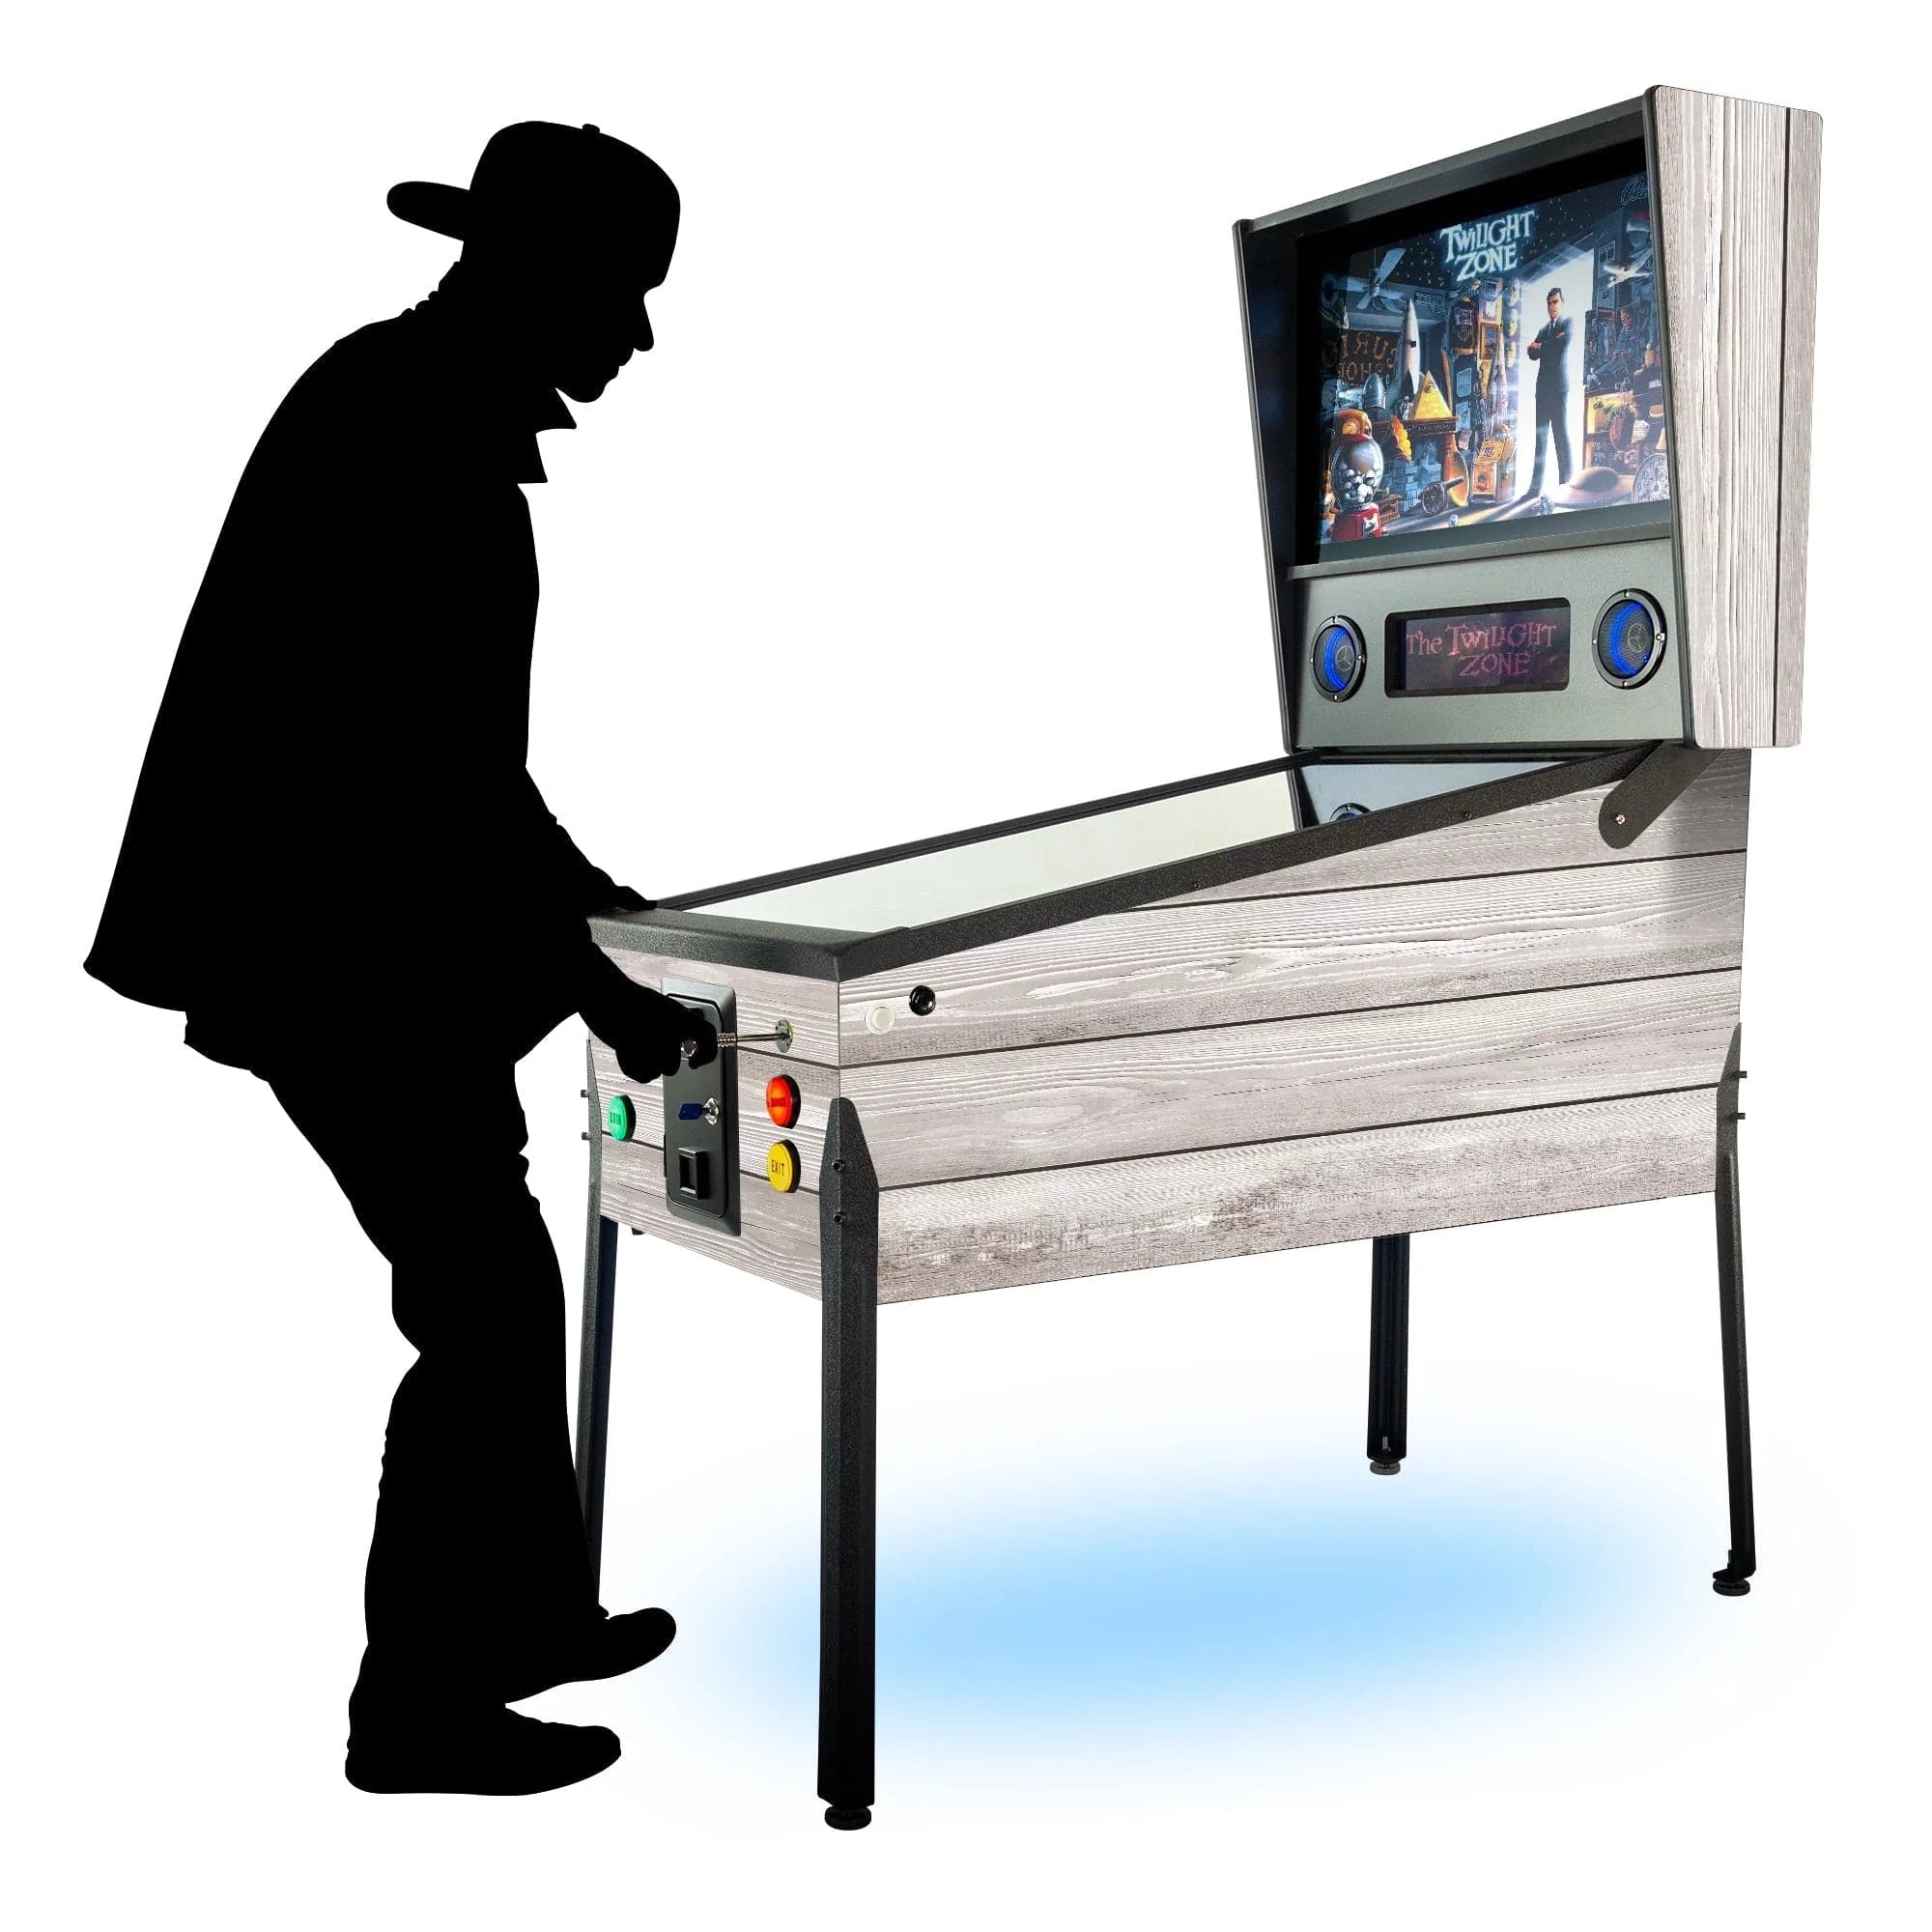 Creative Arcades TR2 Virtual Pinball Machine